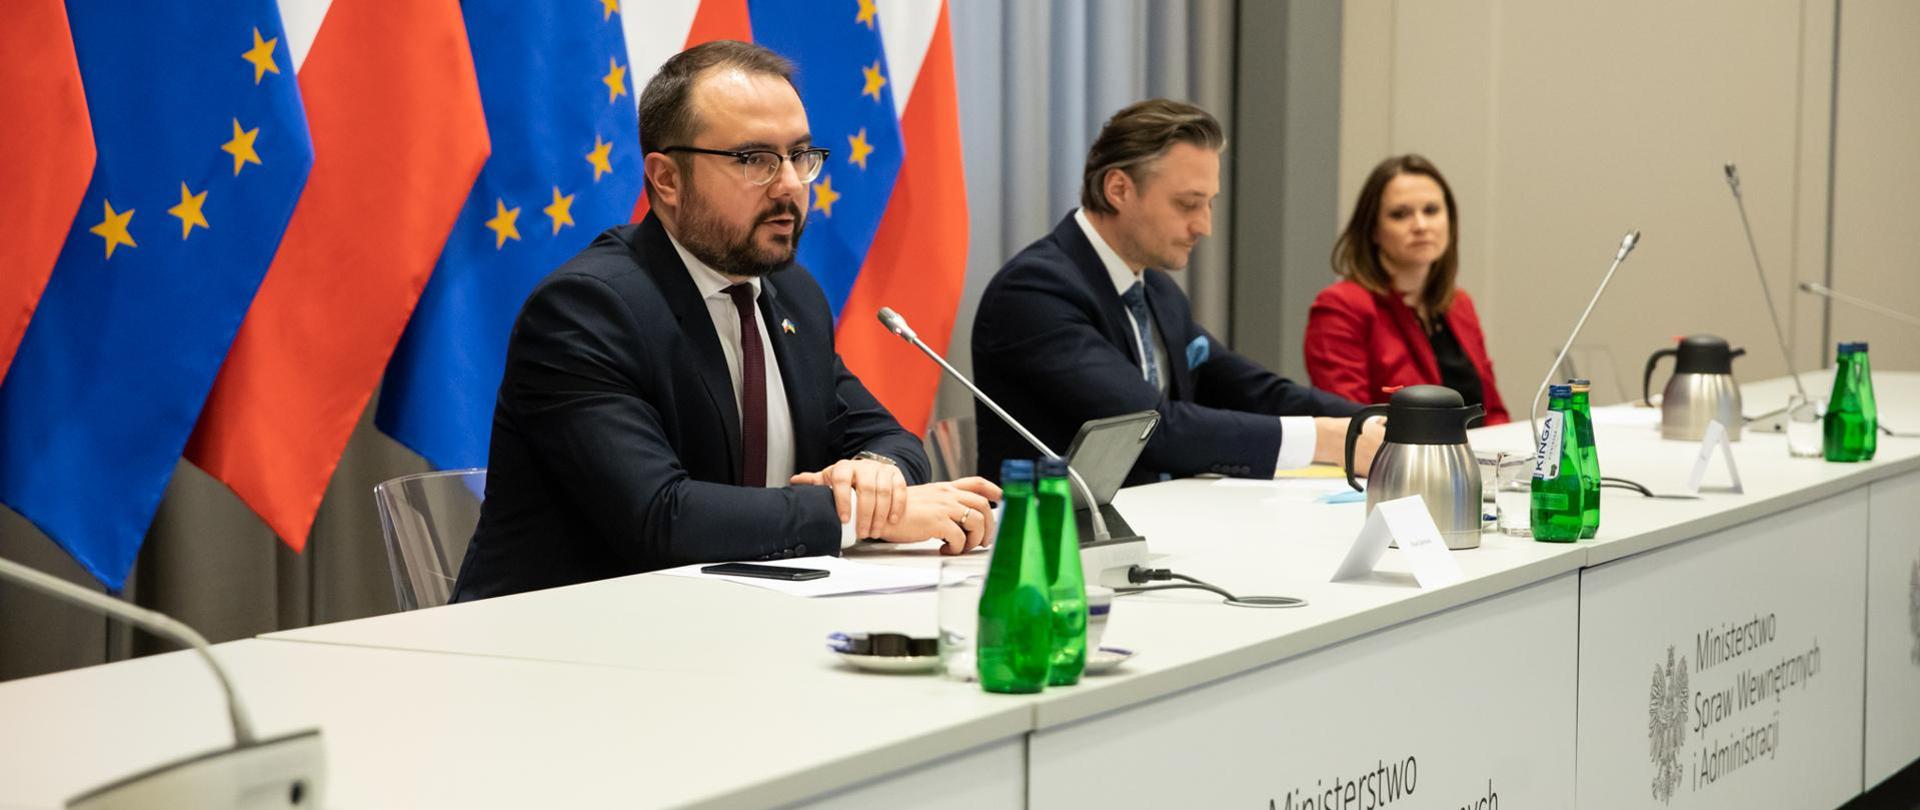 Minister Jabłoński siedząc przy stole mówi do mikrofonu